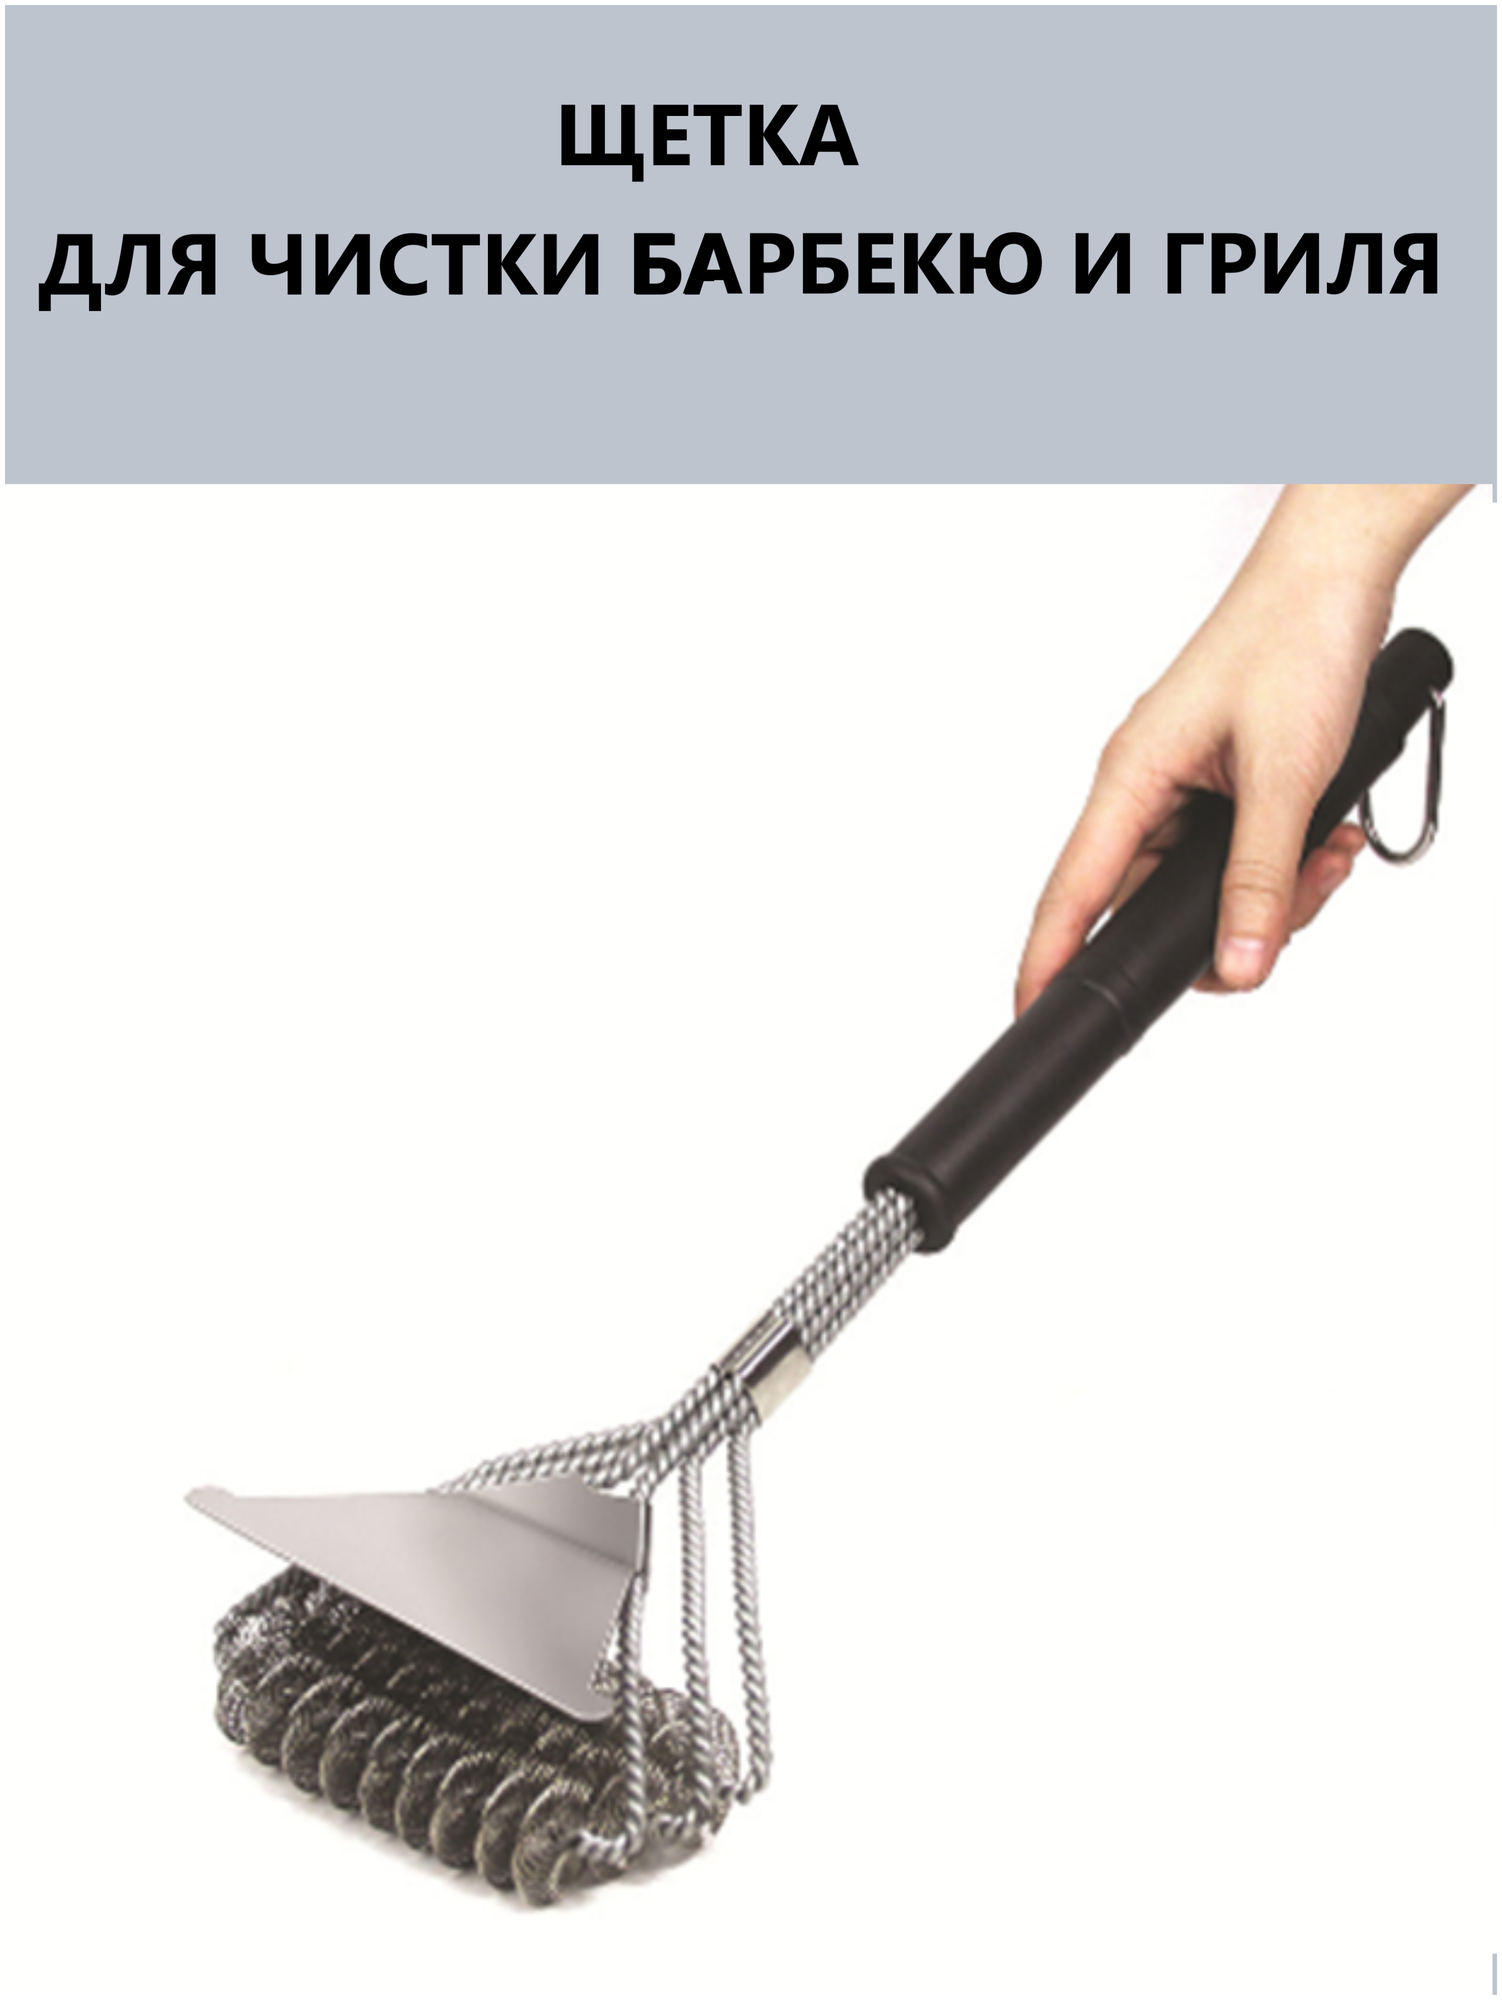 Железная щетка для чистки решетки барбекю гриля и мангала со скребком и длинной ручкой (горизонтальная)